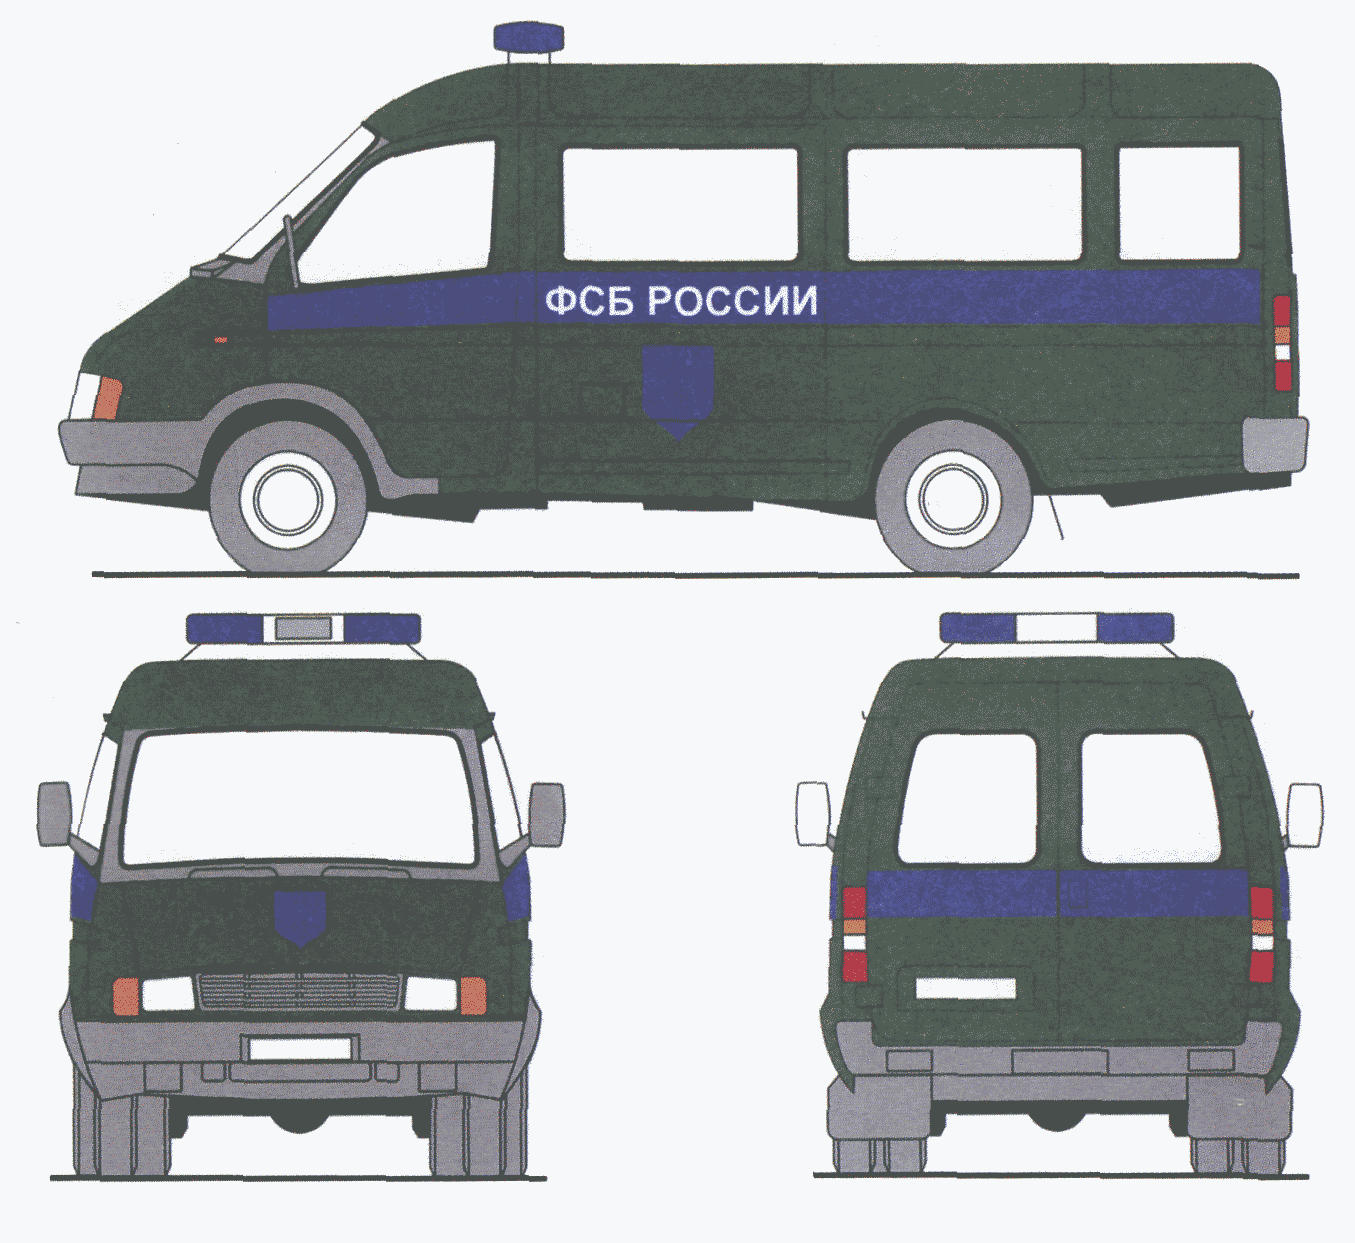 Цветографическая схема автомобилей ФСБ